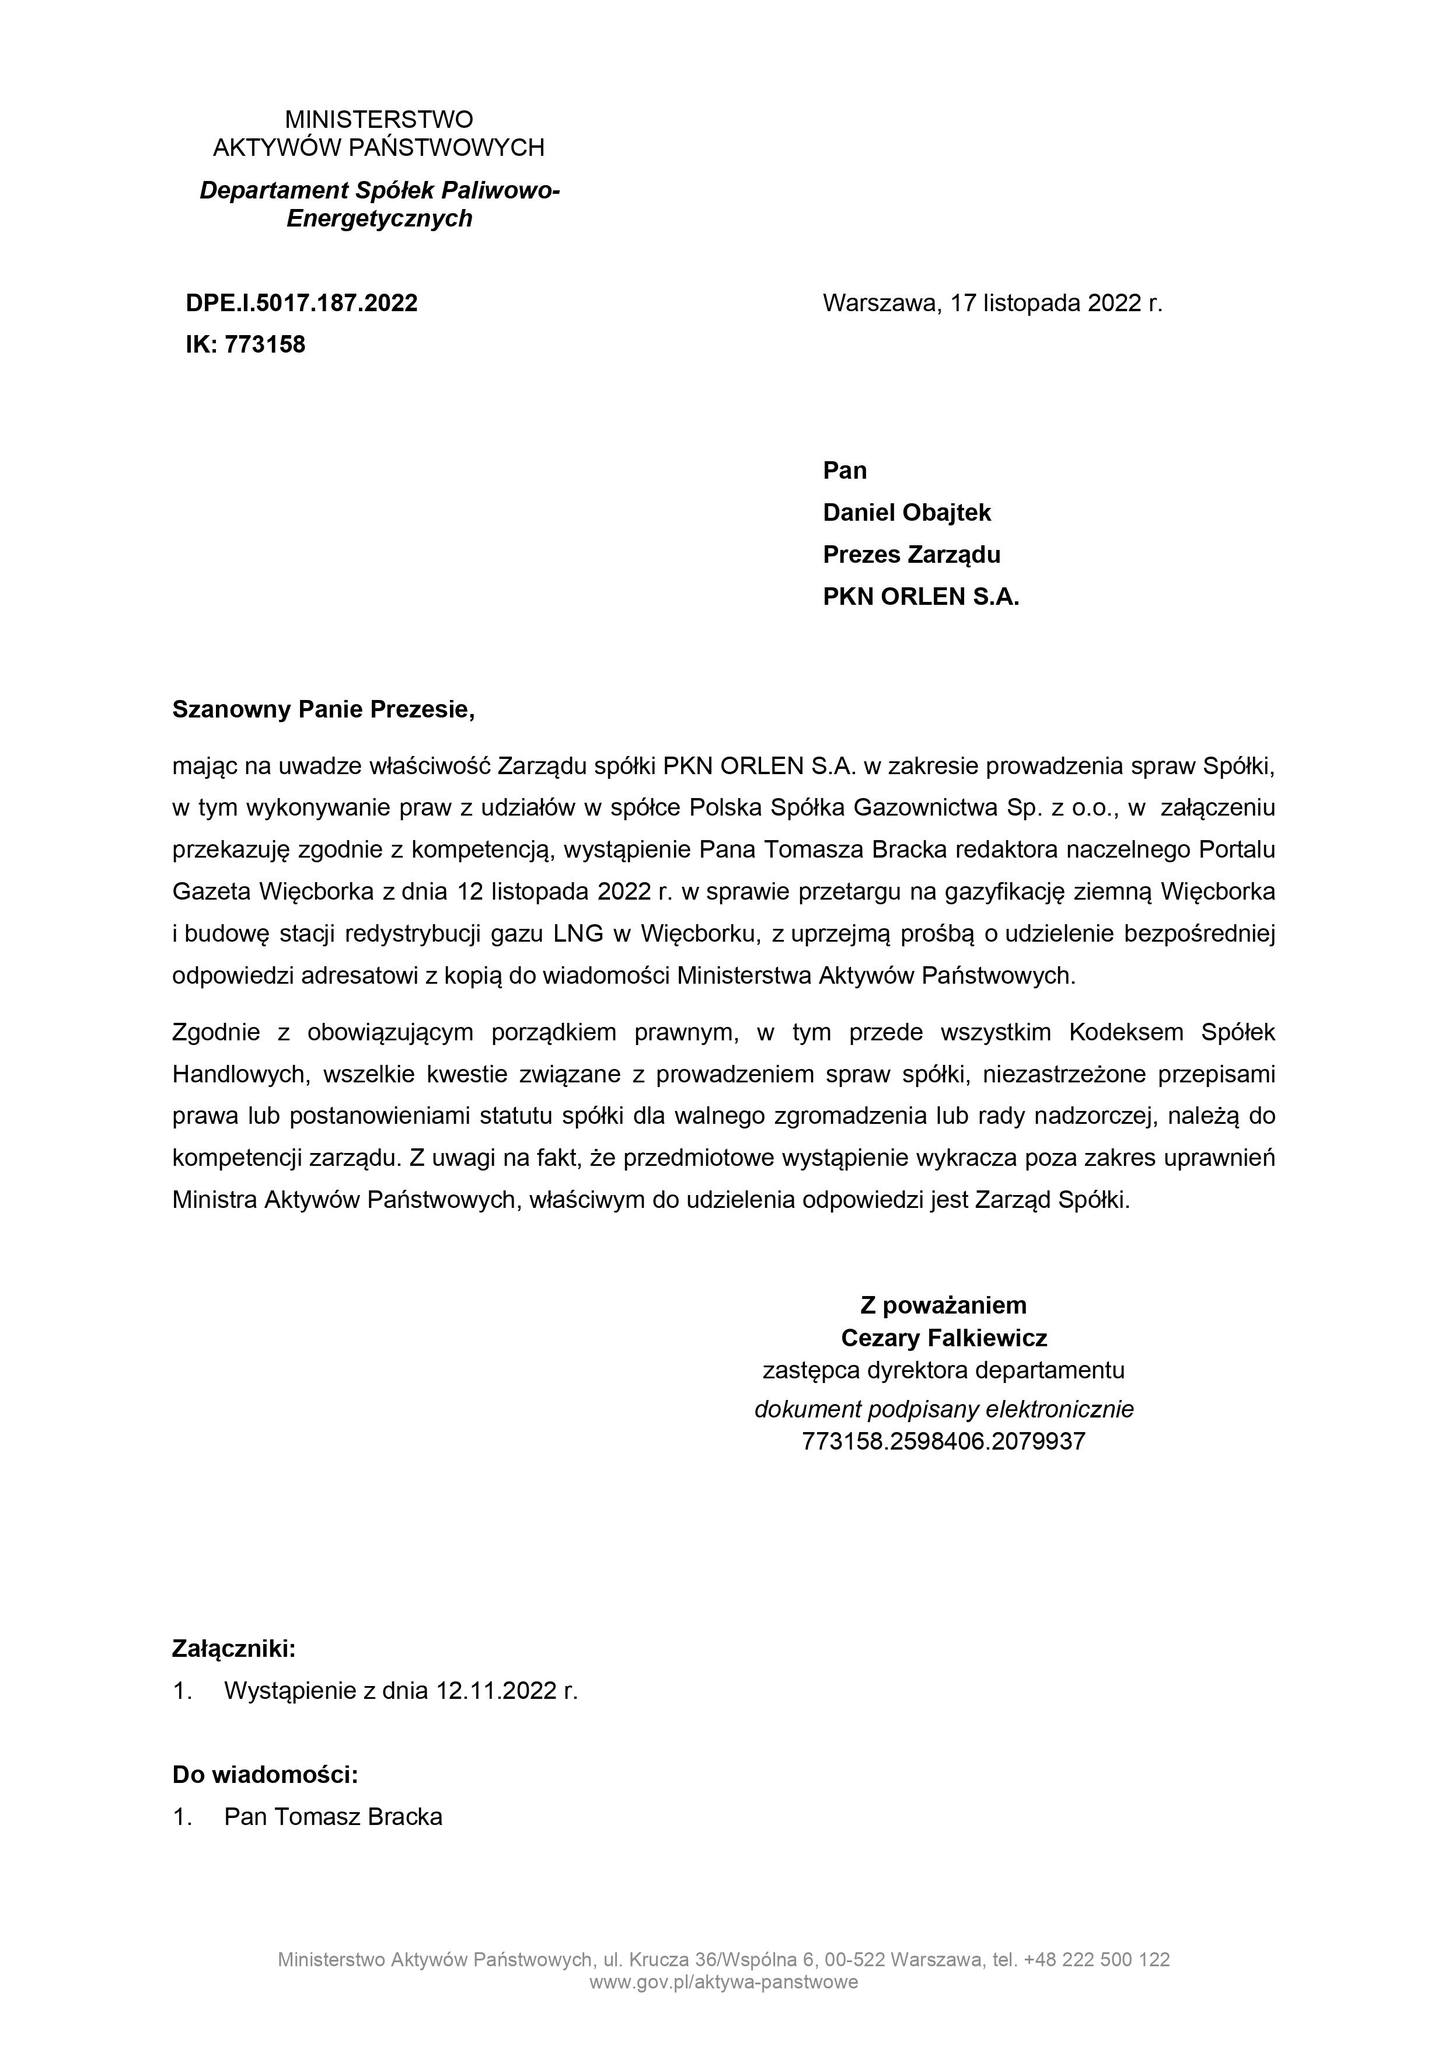 Pilne ! PSG w Warszawie zrezygnowała z gazyfikacji ziemnej Więcborka choć miało na ten cel prawie 12 mln zł. dotacji z UE przy całym koszcie inwestycji 19 mln zł